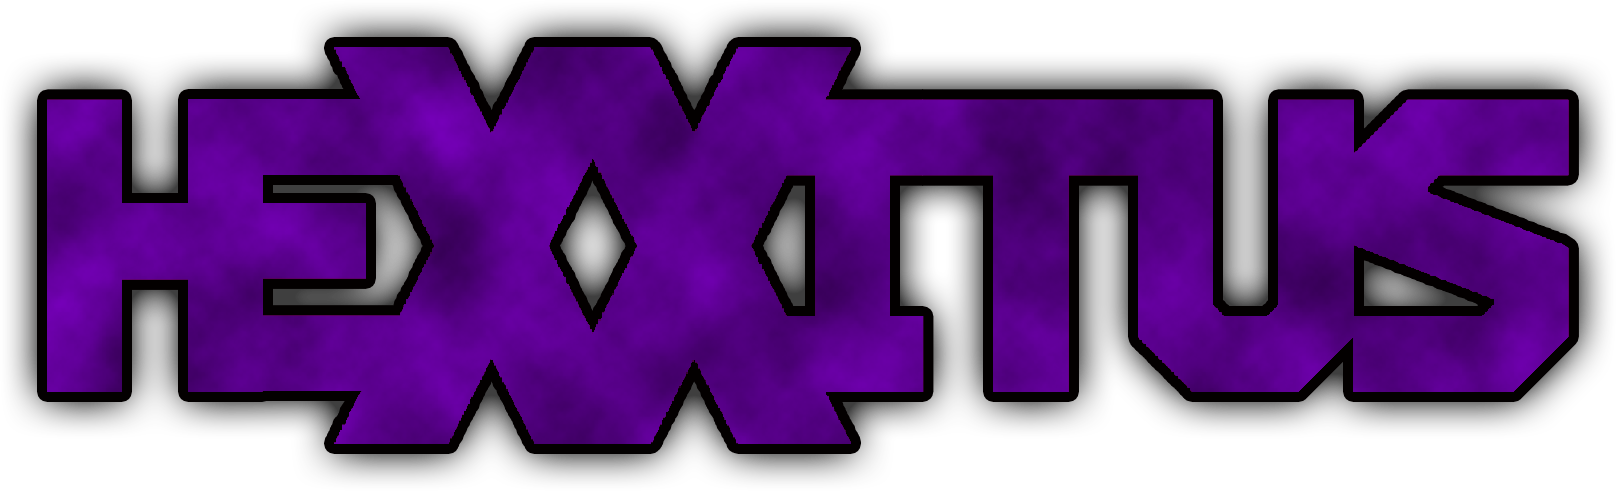 Hexxitus Logo